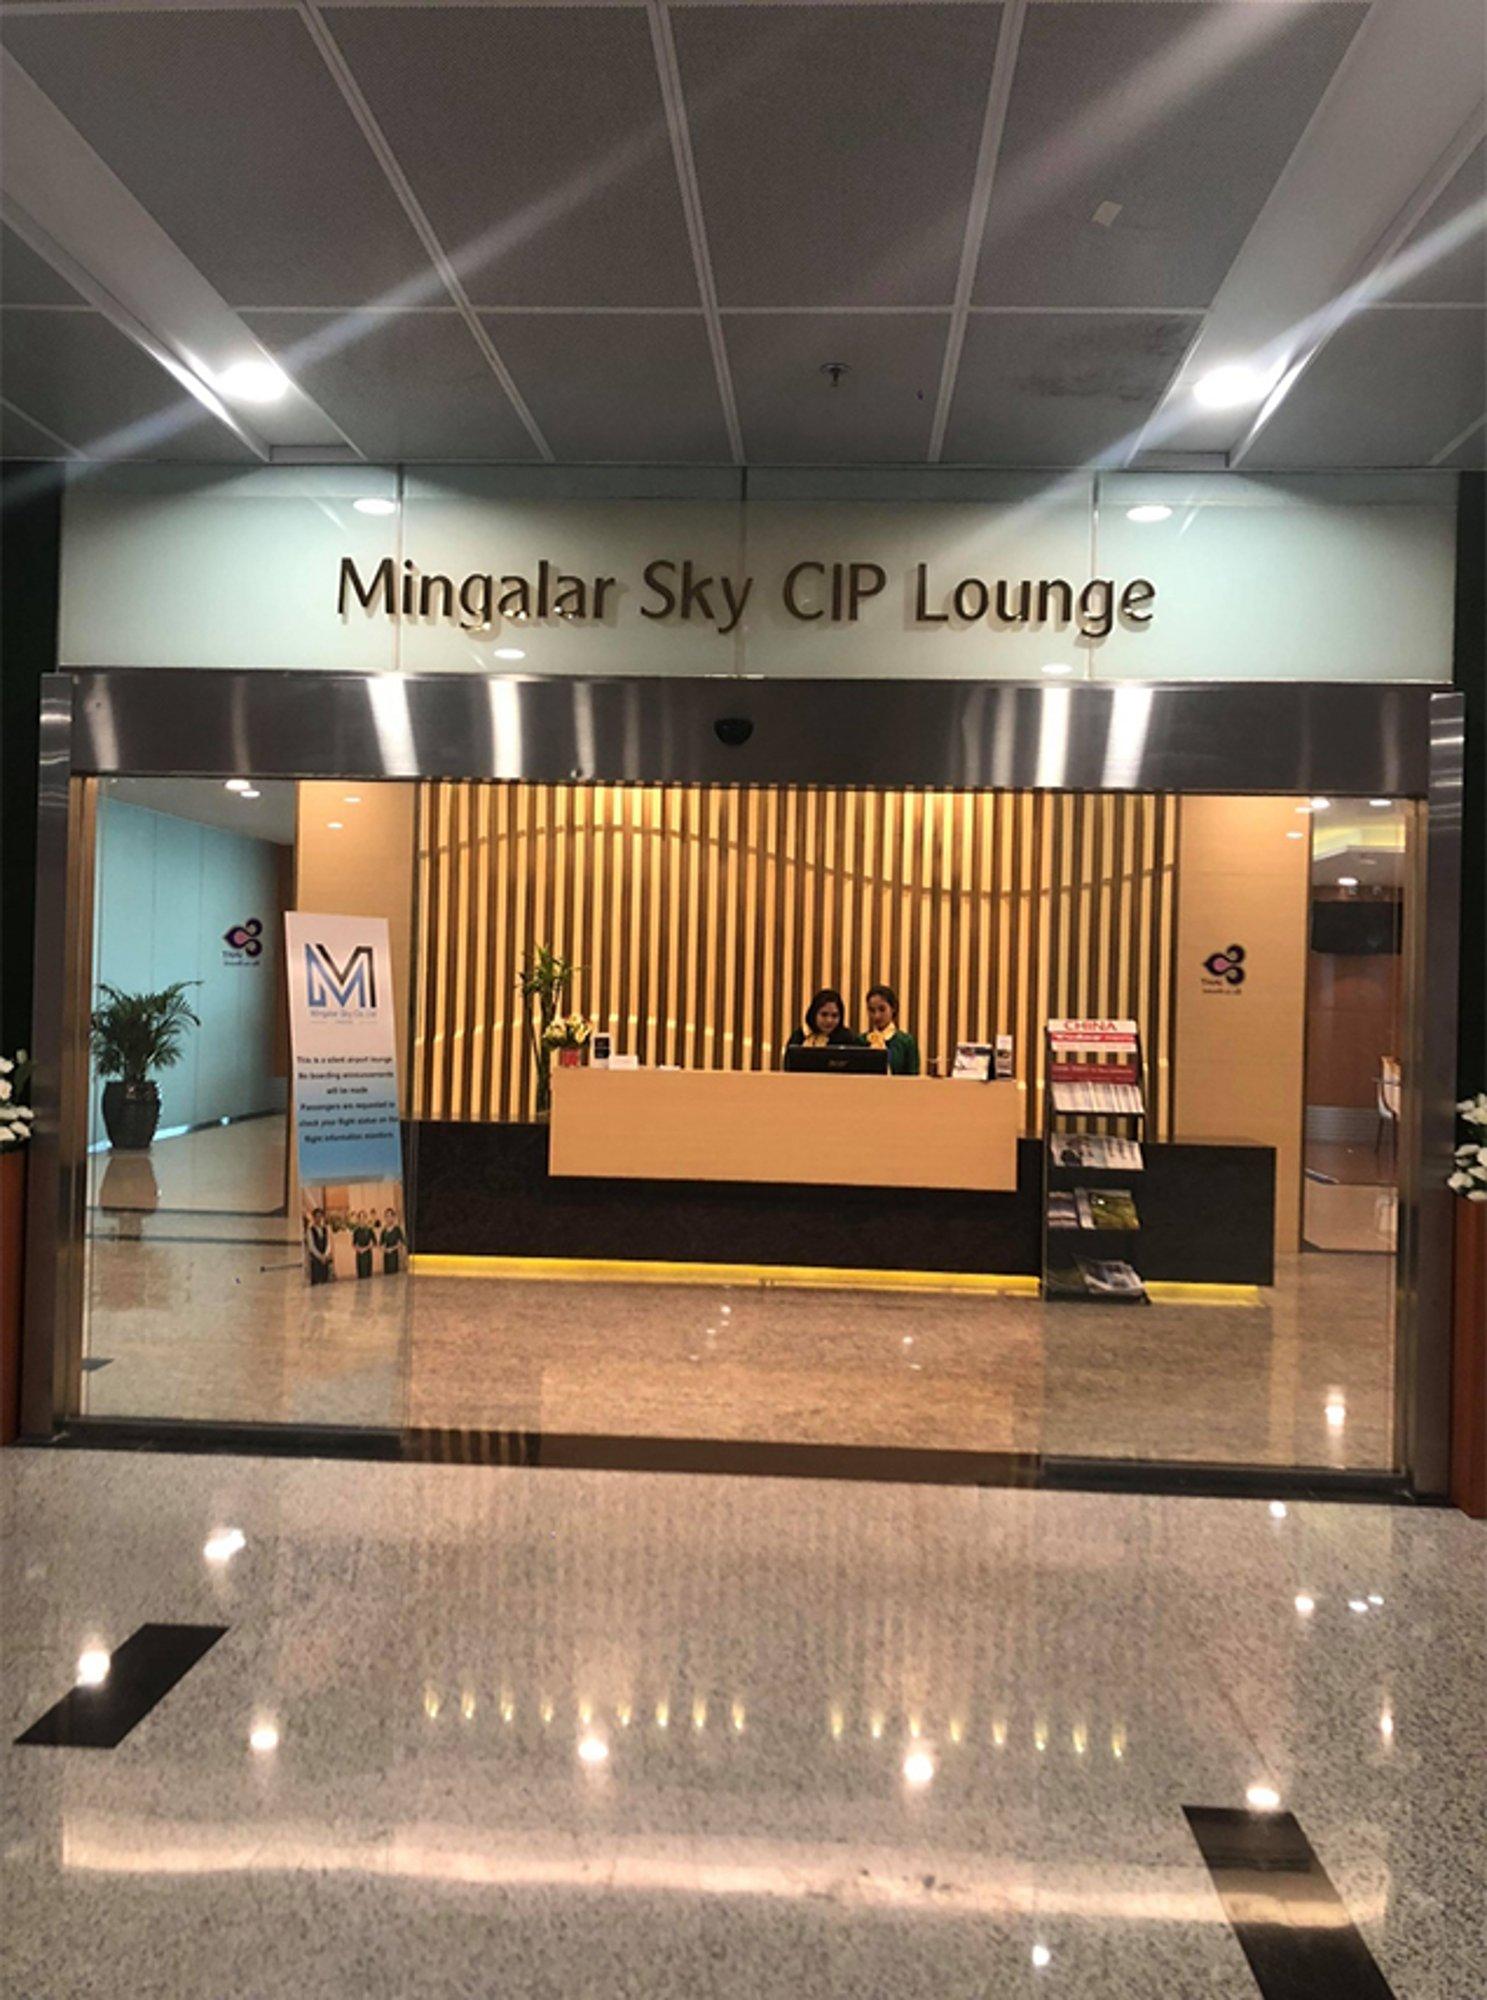 Mingalar Sky CIP Lounge image 1 of 4